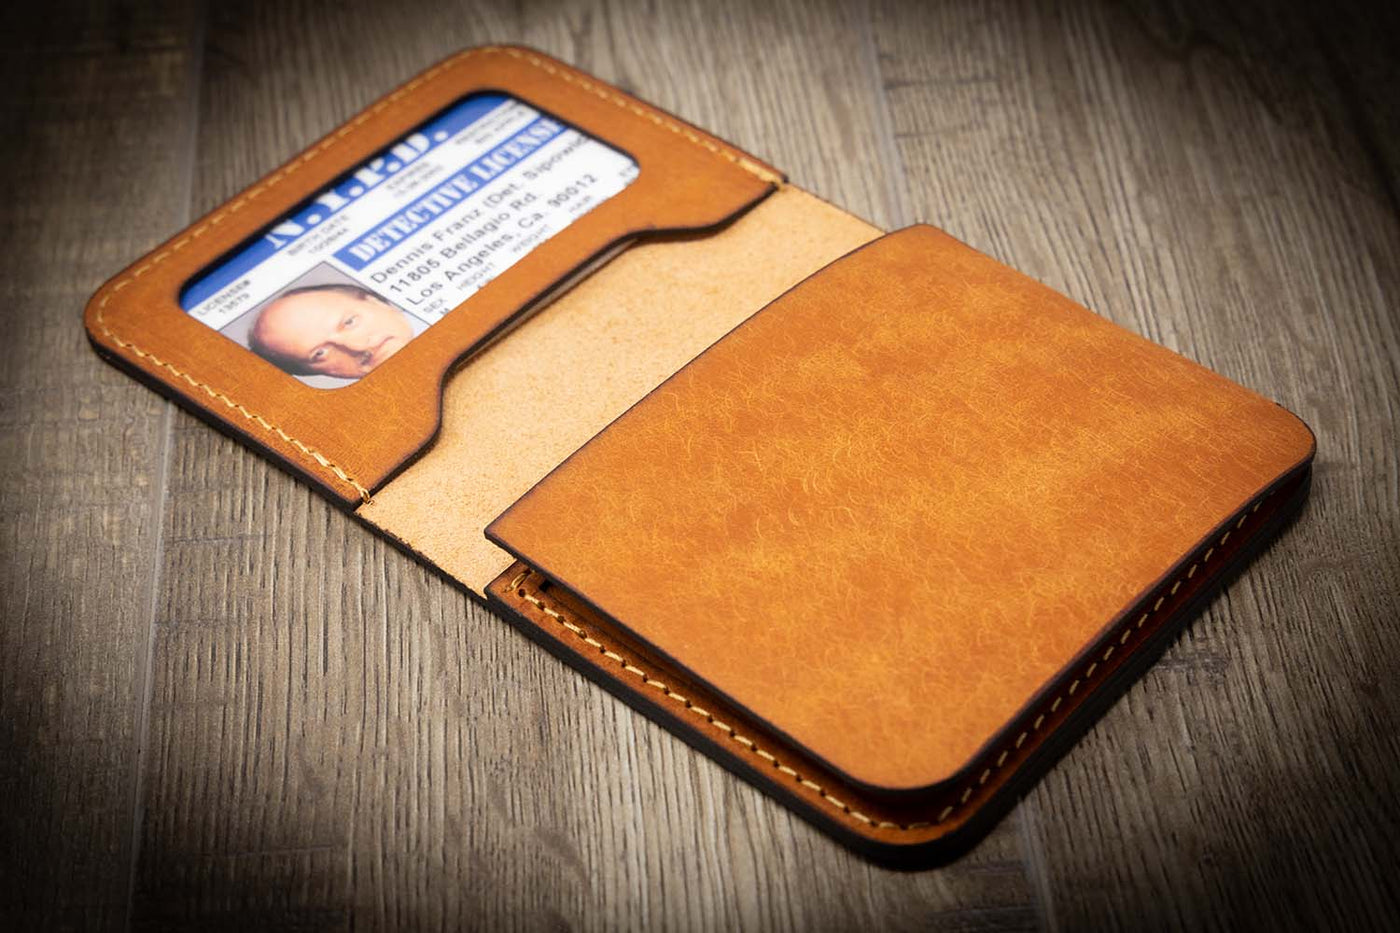 Minimalist ID Leather Wallet